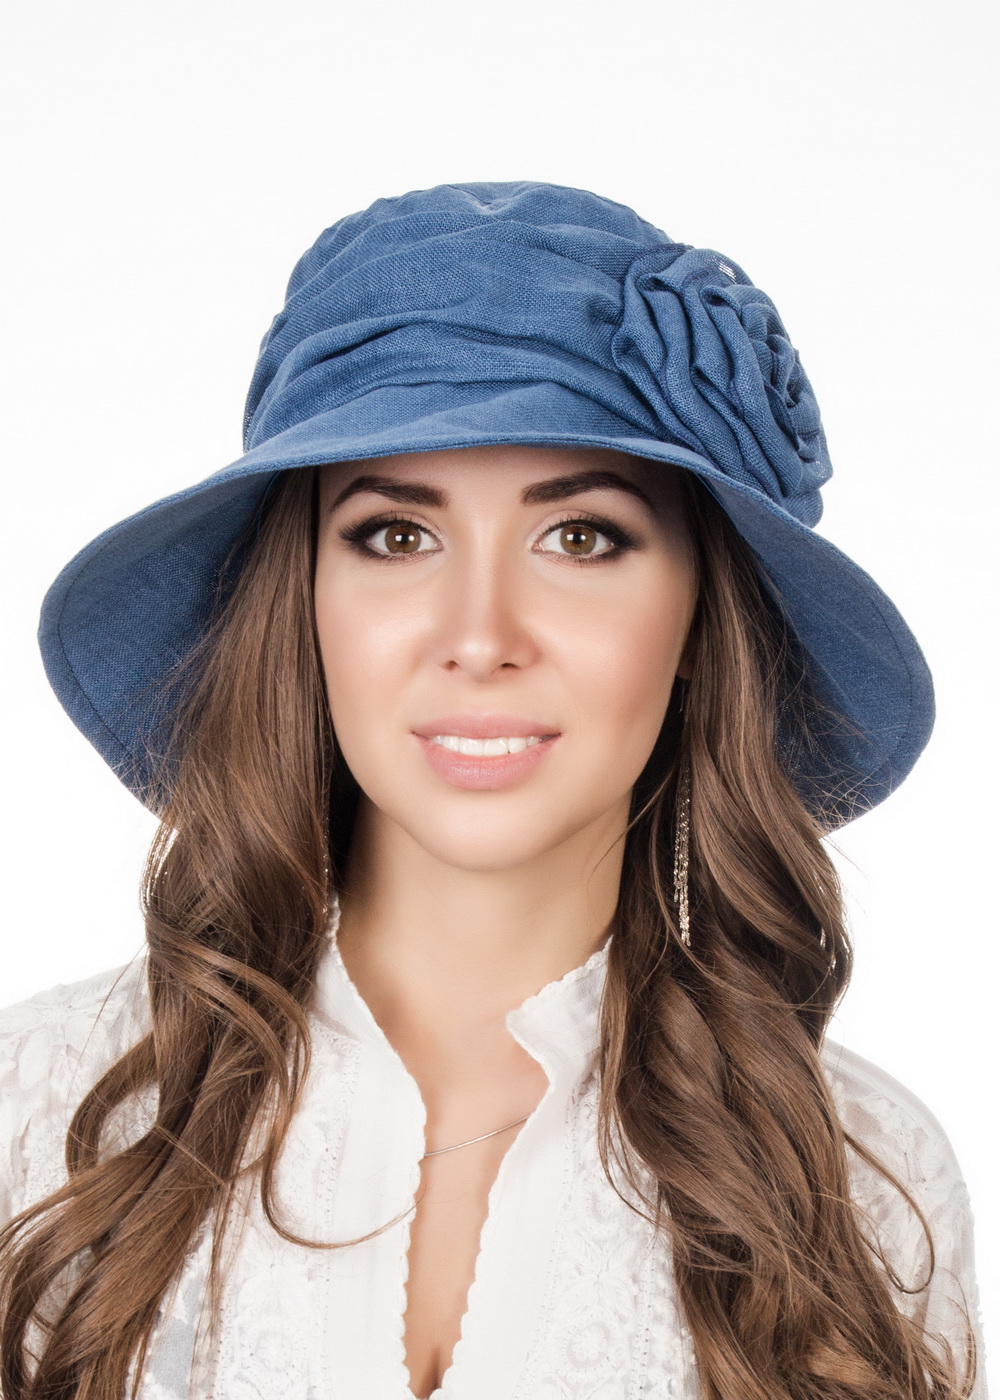 Шляпы джинса. Battista шляпа Панама. Шляпа Панама Level Pro. Шляпа женская летняя. Джинсовая шляпа женская.